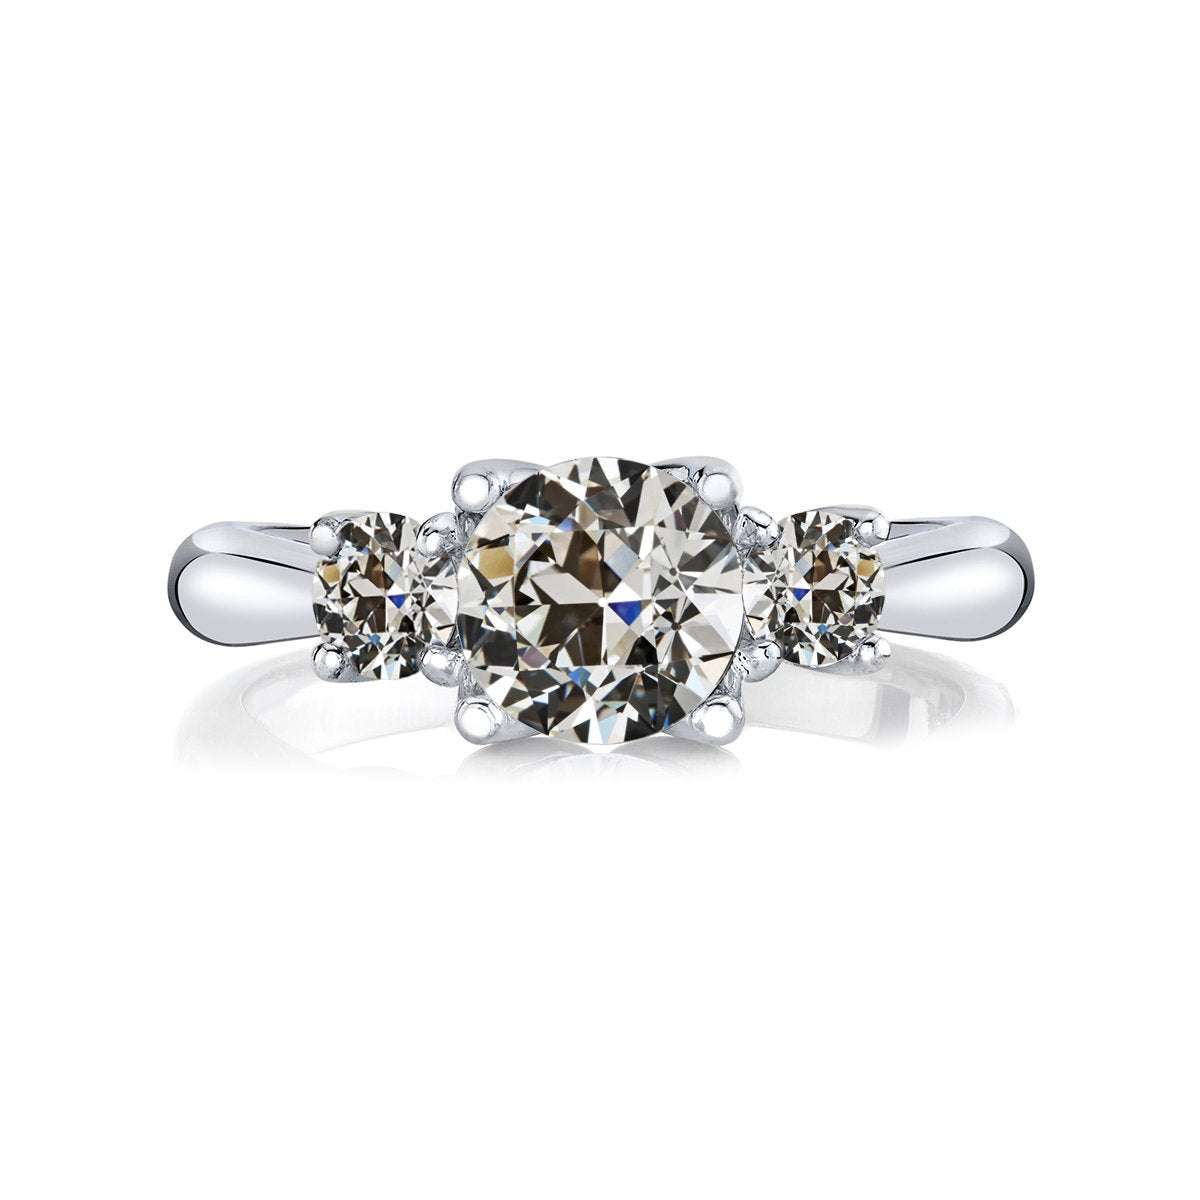 3 pietre rotonde anello di diamanti taglio vecchio miniera oro bianco 3,50 carati - harrychadent.it